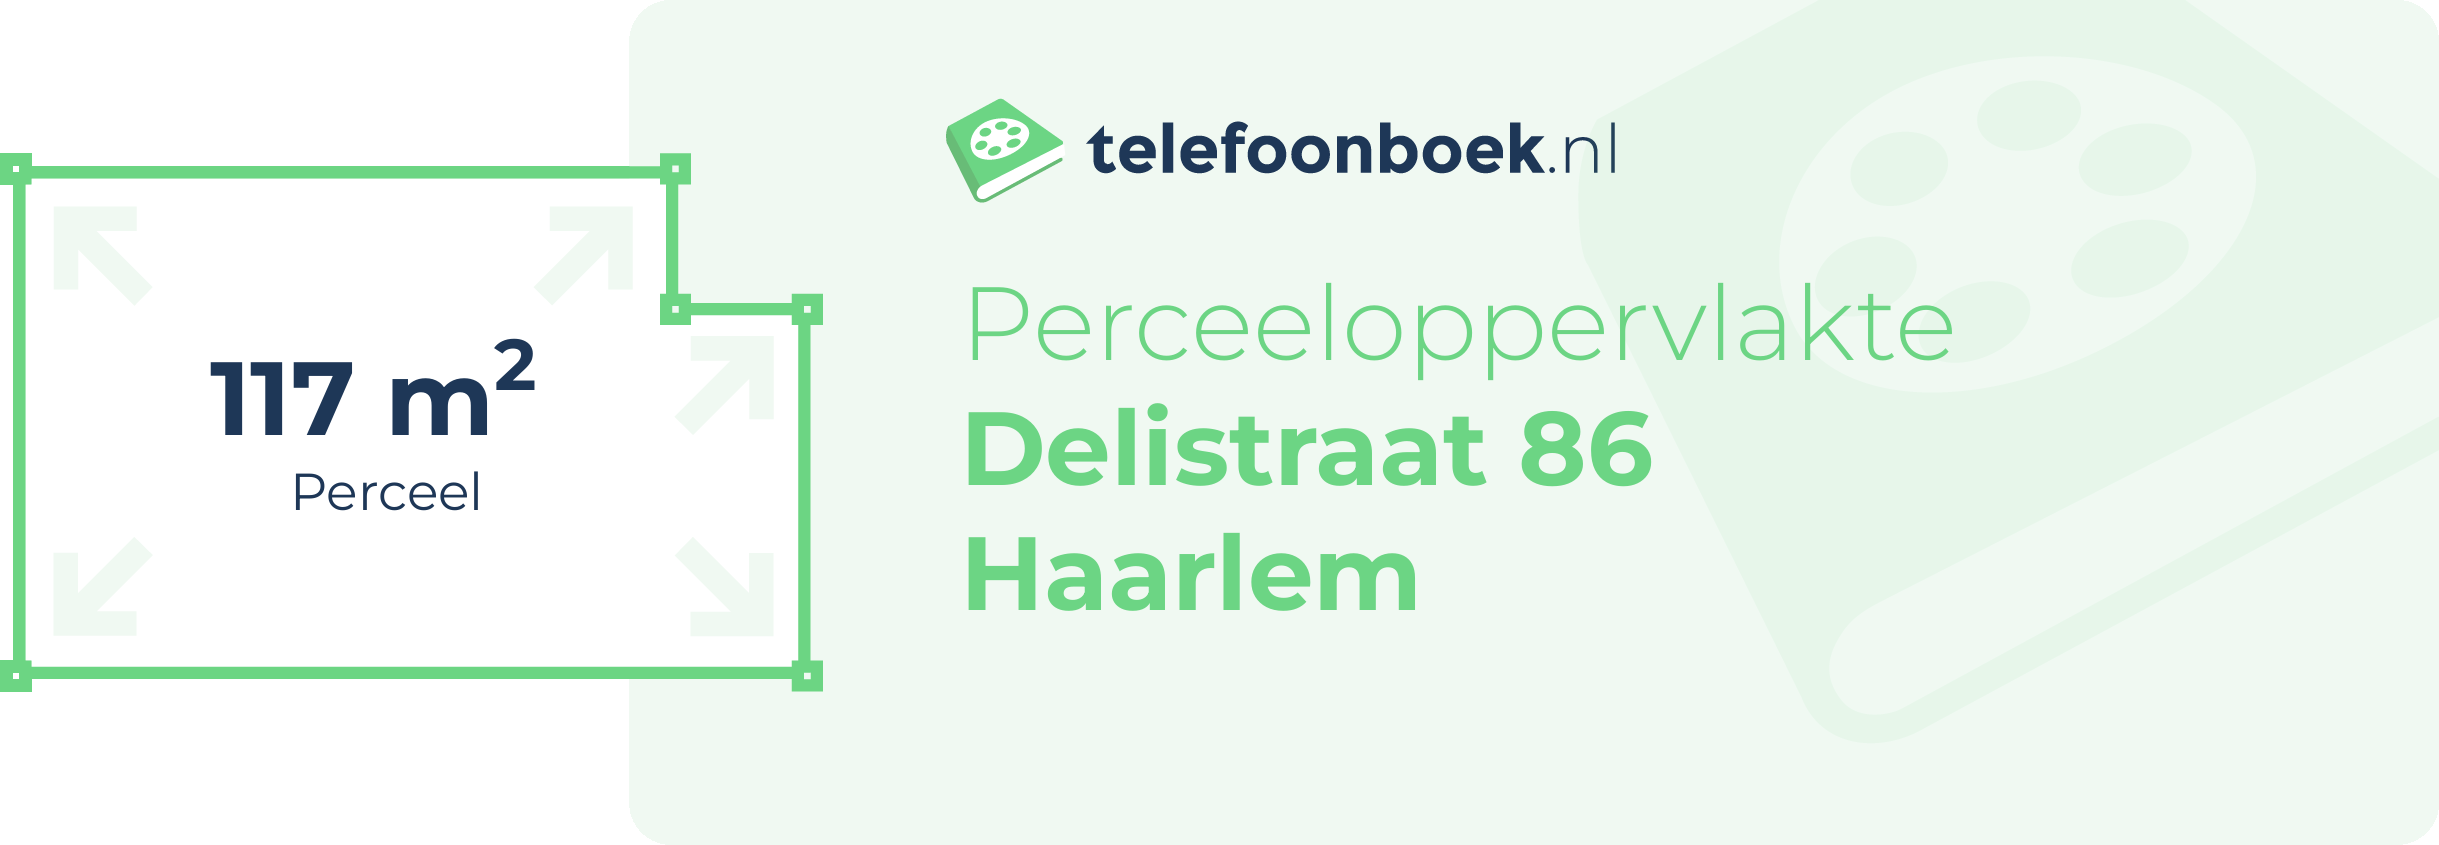 Perceeloppervlakte Delistraat 86 Haarlem